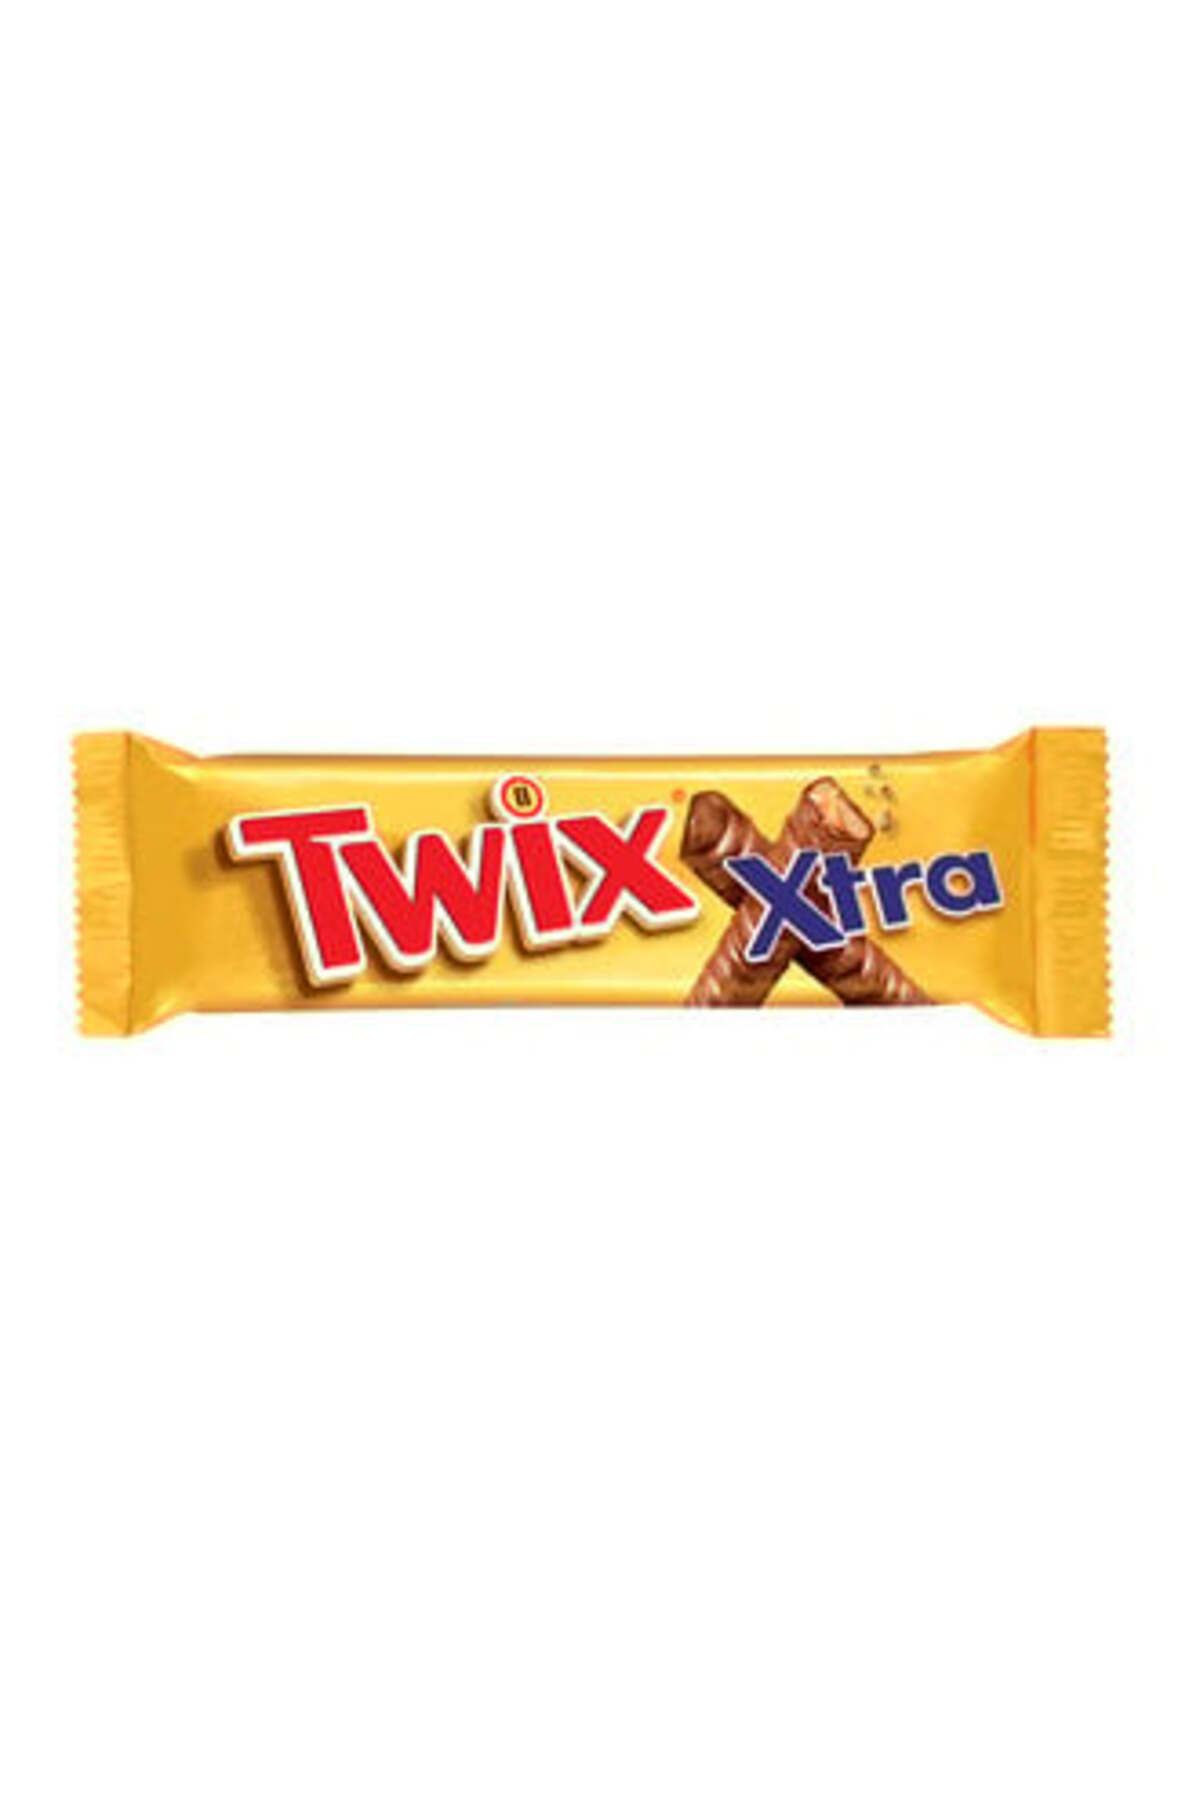 Twix Xtra Karamelli Çikolata 75 G ( 2 ADET )